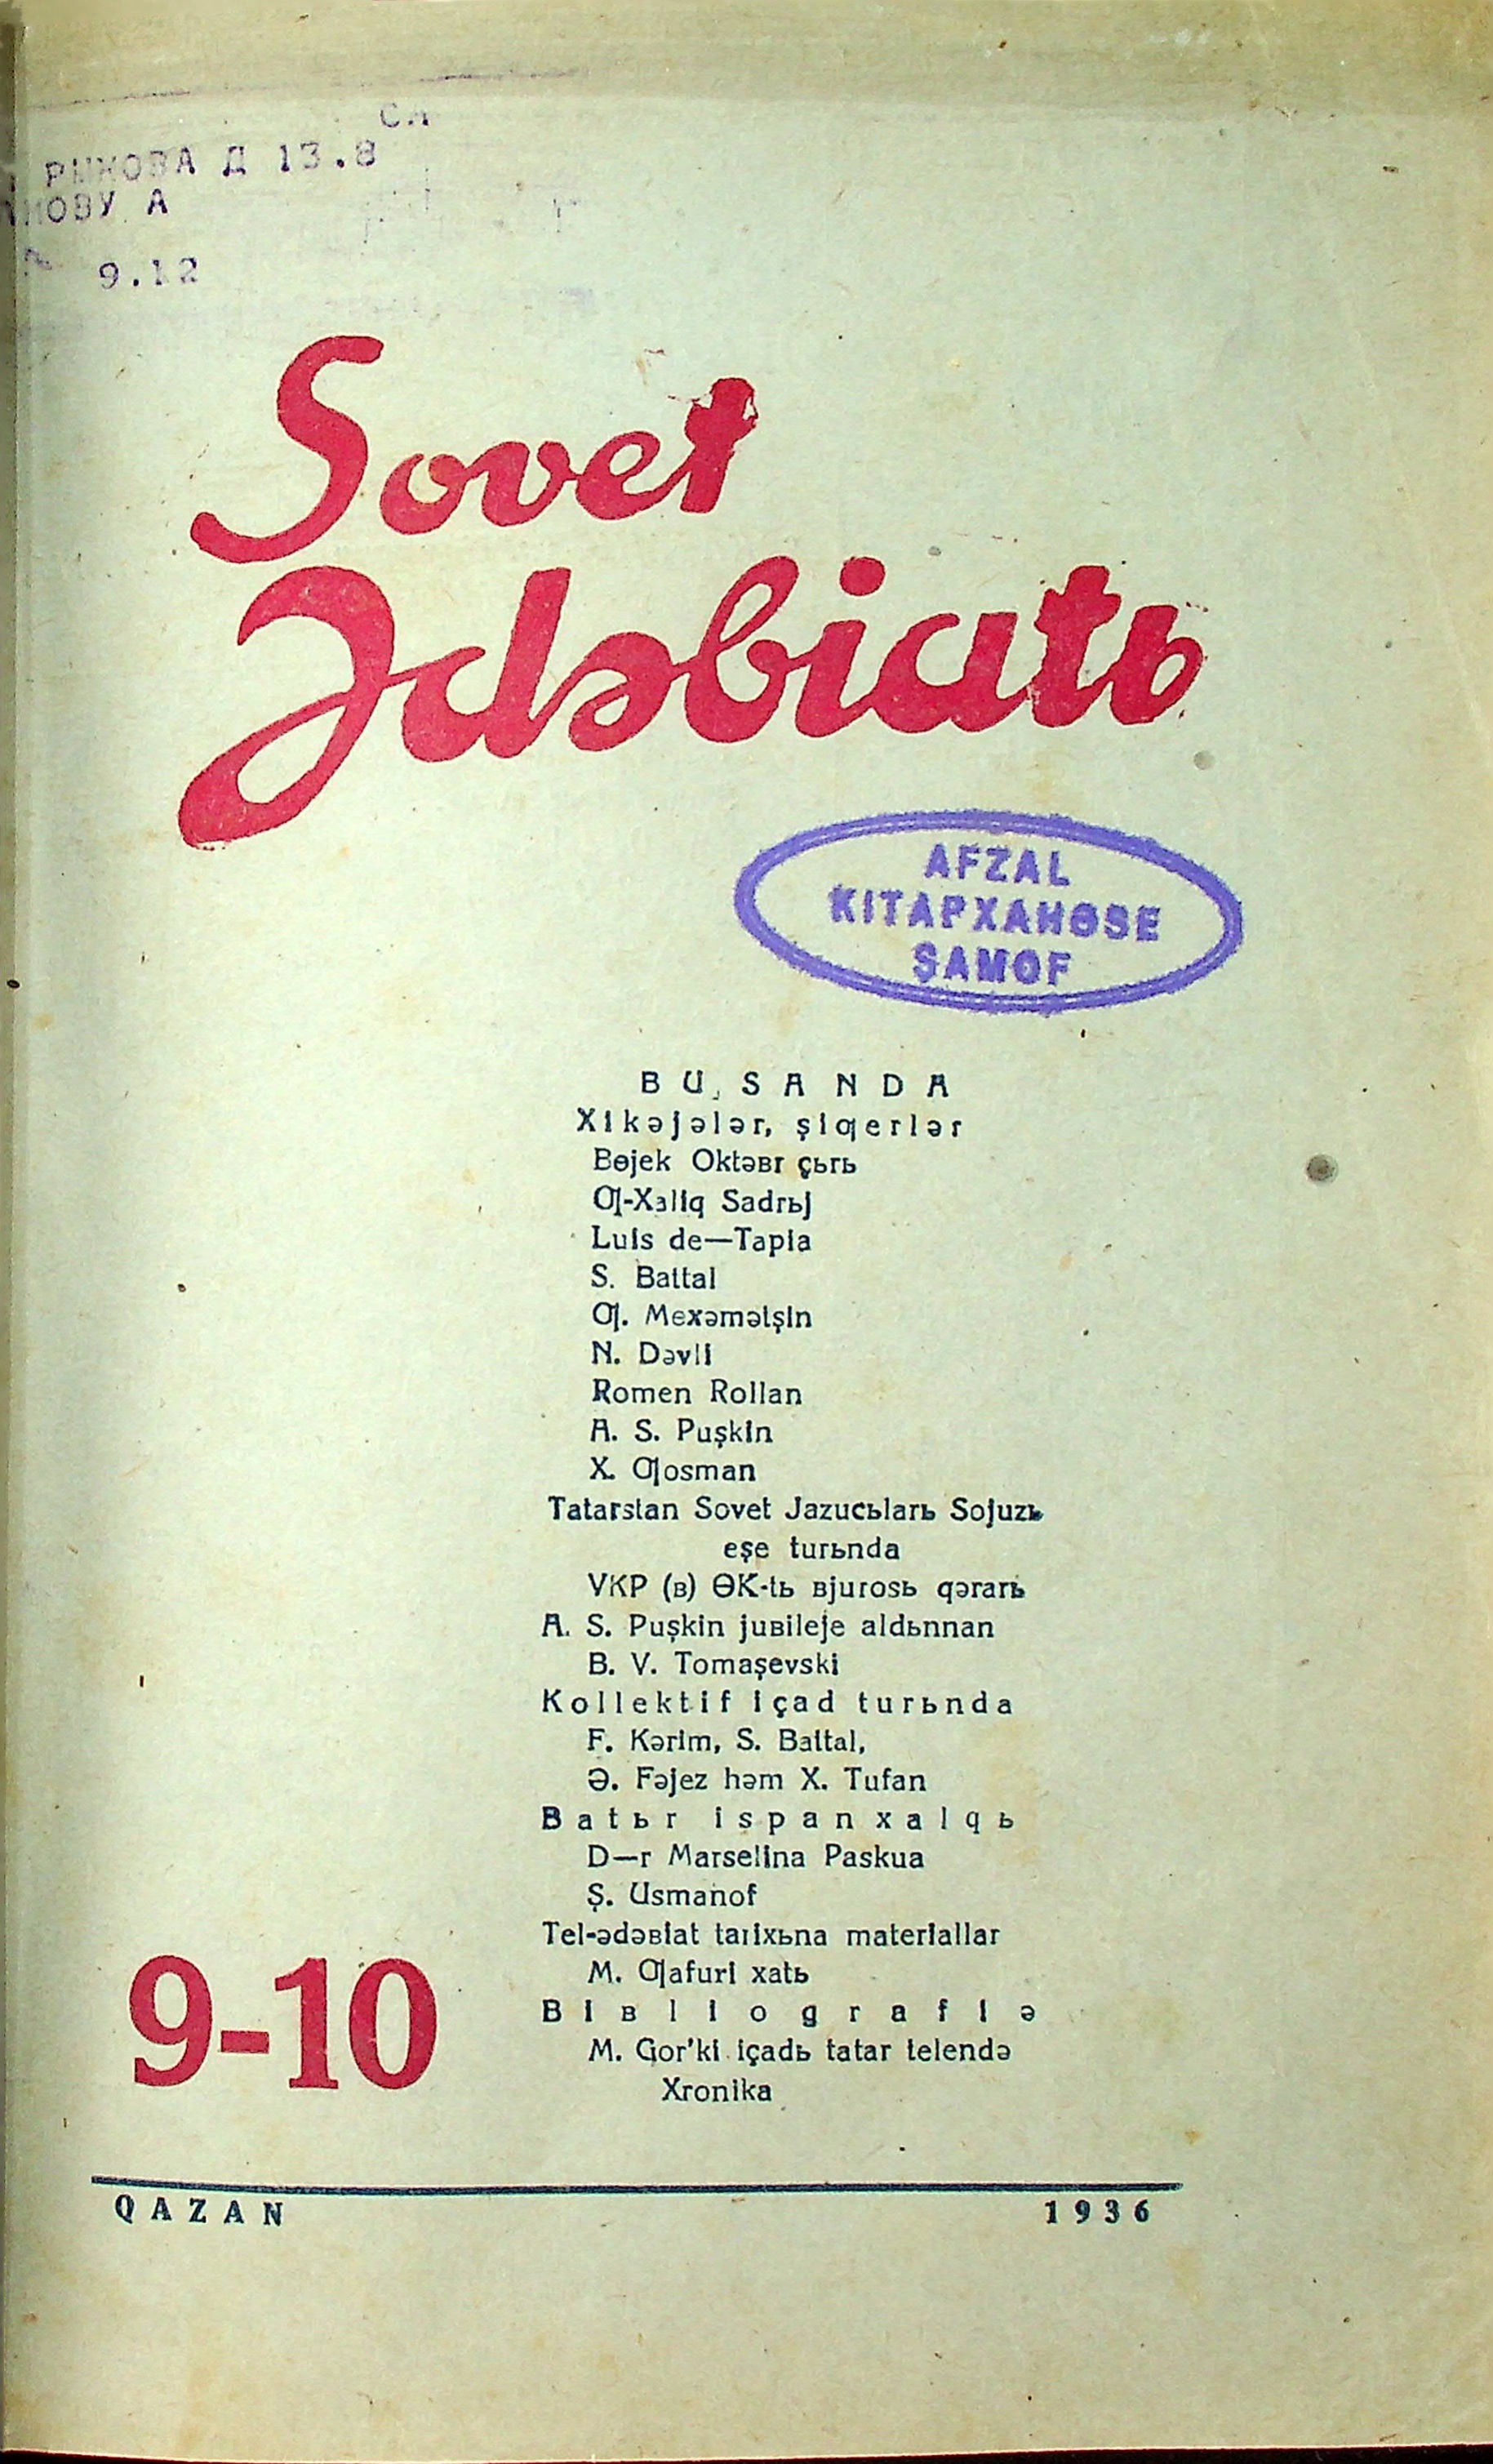 Фото журнала 1936 года. Выпуск номер 9-10